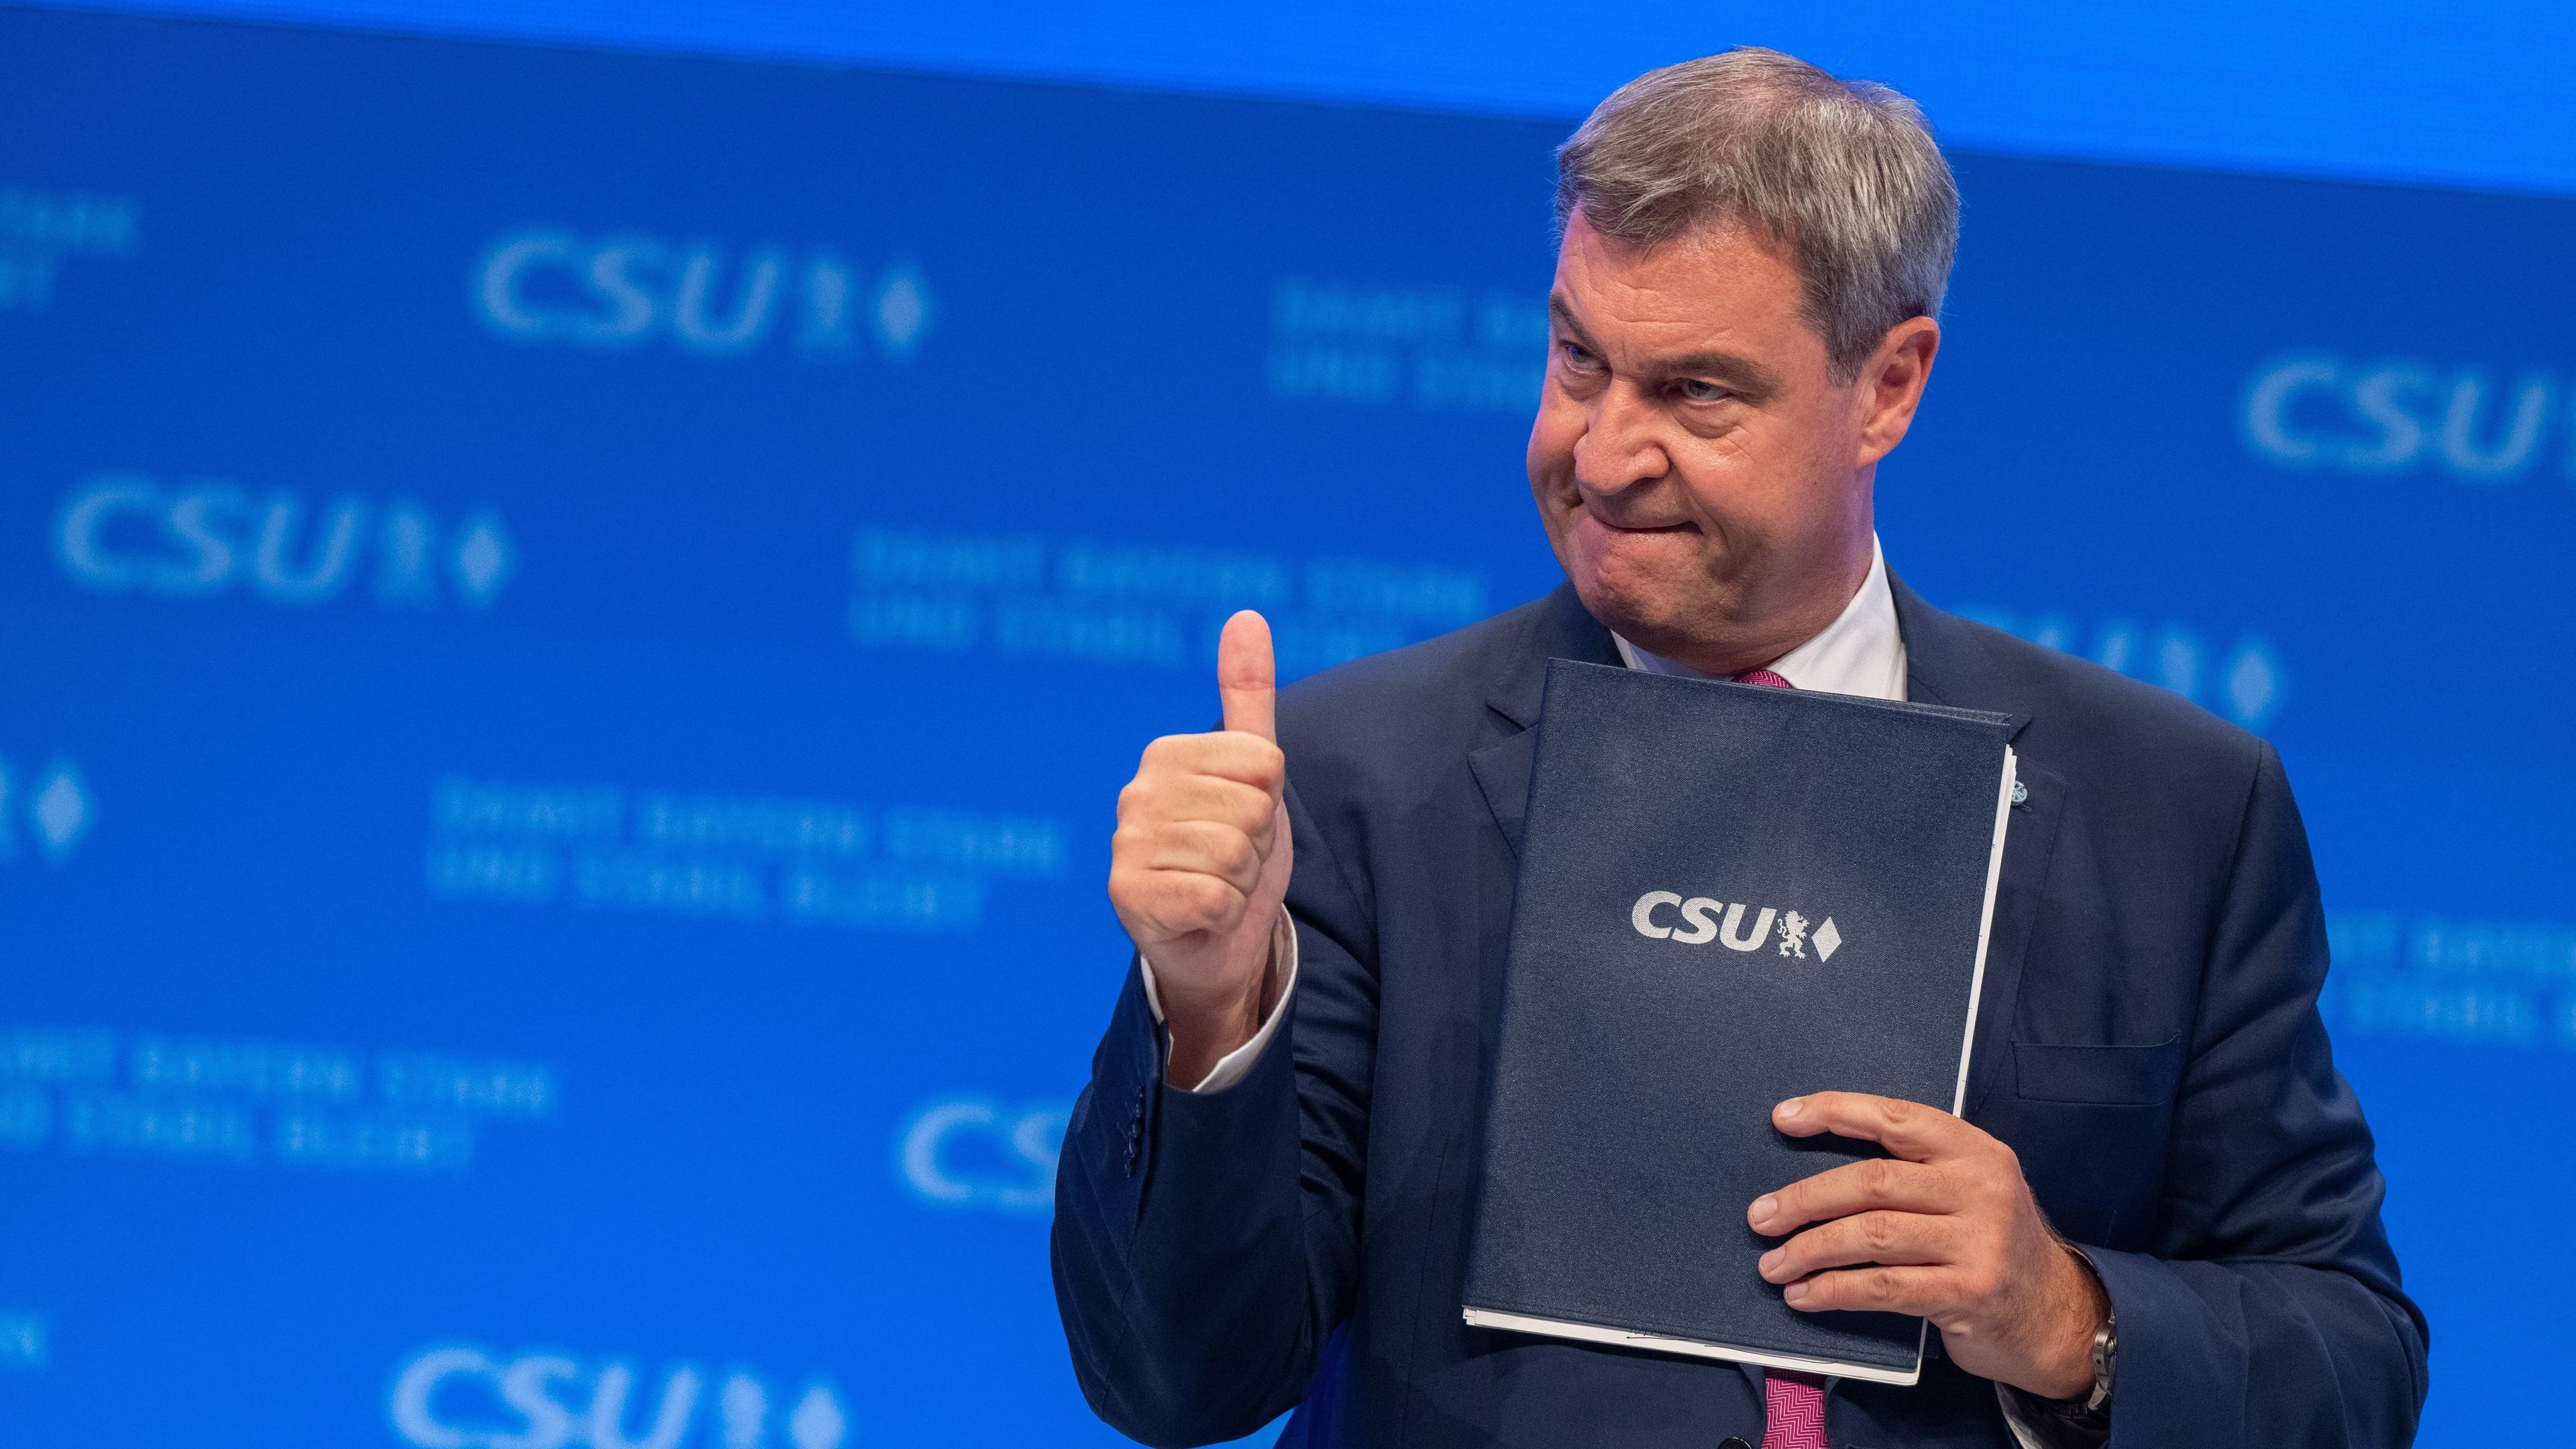 CSU-Parteichef Markus Söder wiedergewählt